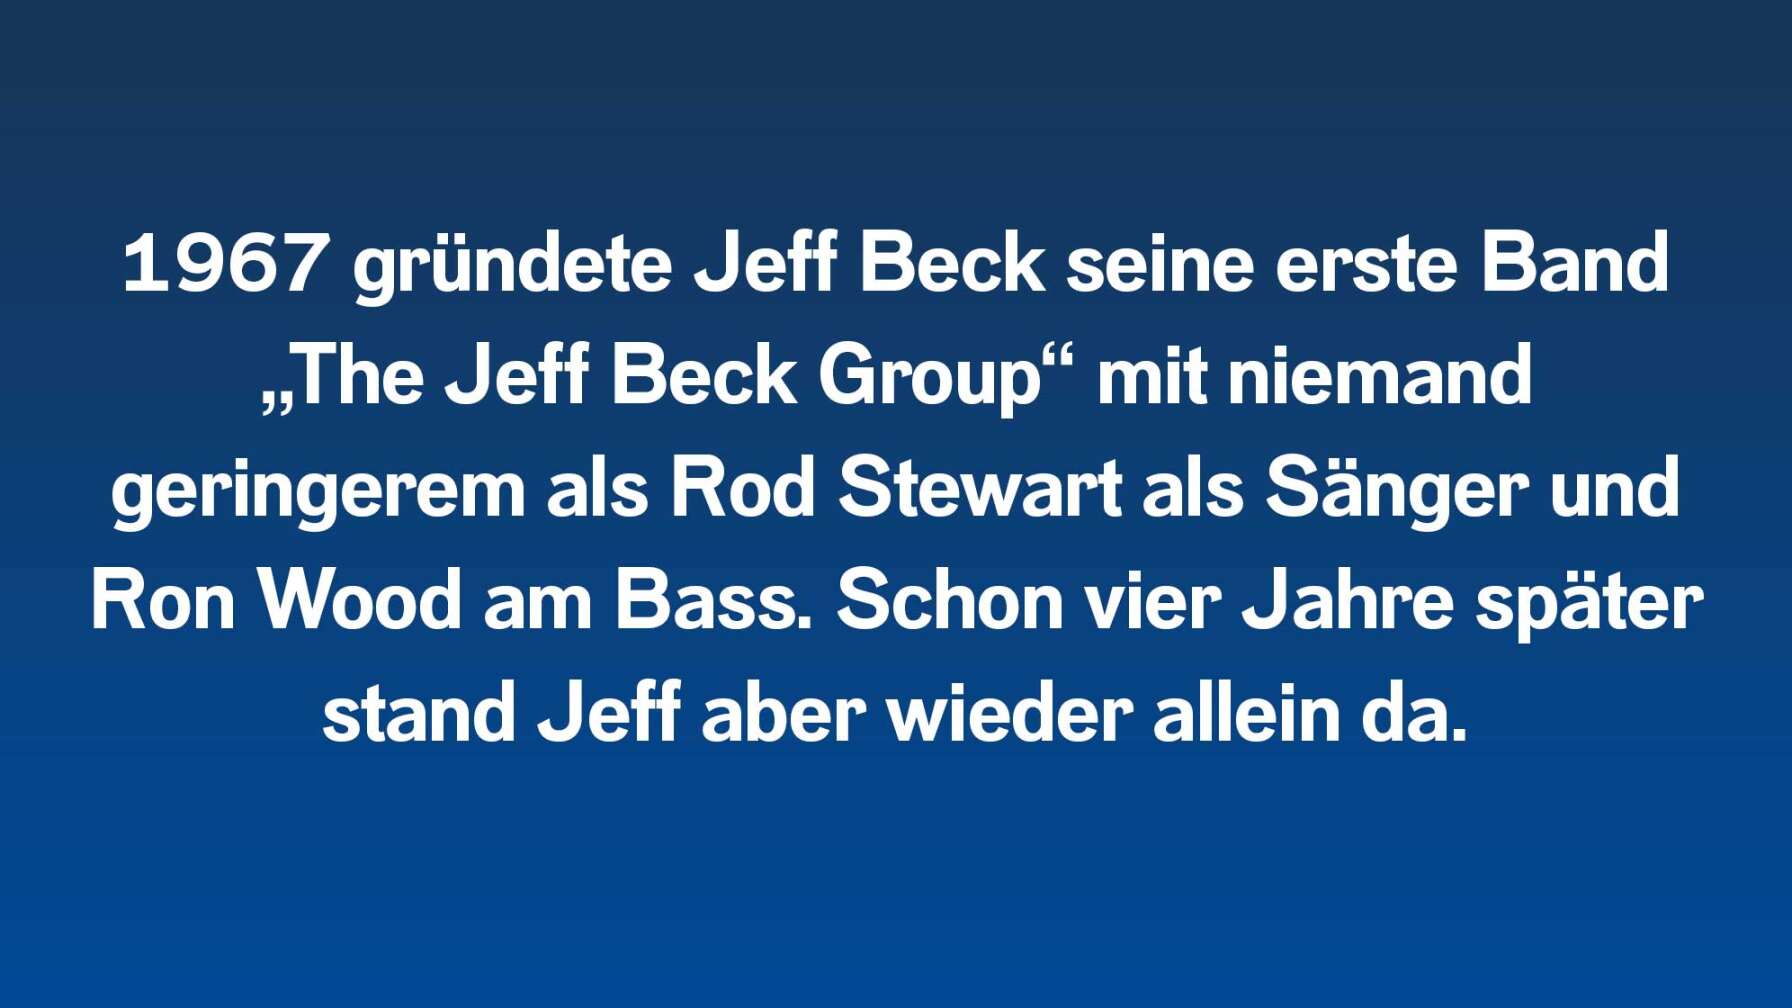 1967 gründete Jeff Beck seine erste Band „The Jeff Beck Group“ mit niemand geringerem als Rod Stewart als Sänger und Ron Wood am Bass. Schon vier Jahre später stand Jeff aber wieder allein da.